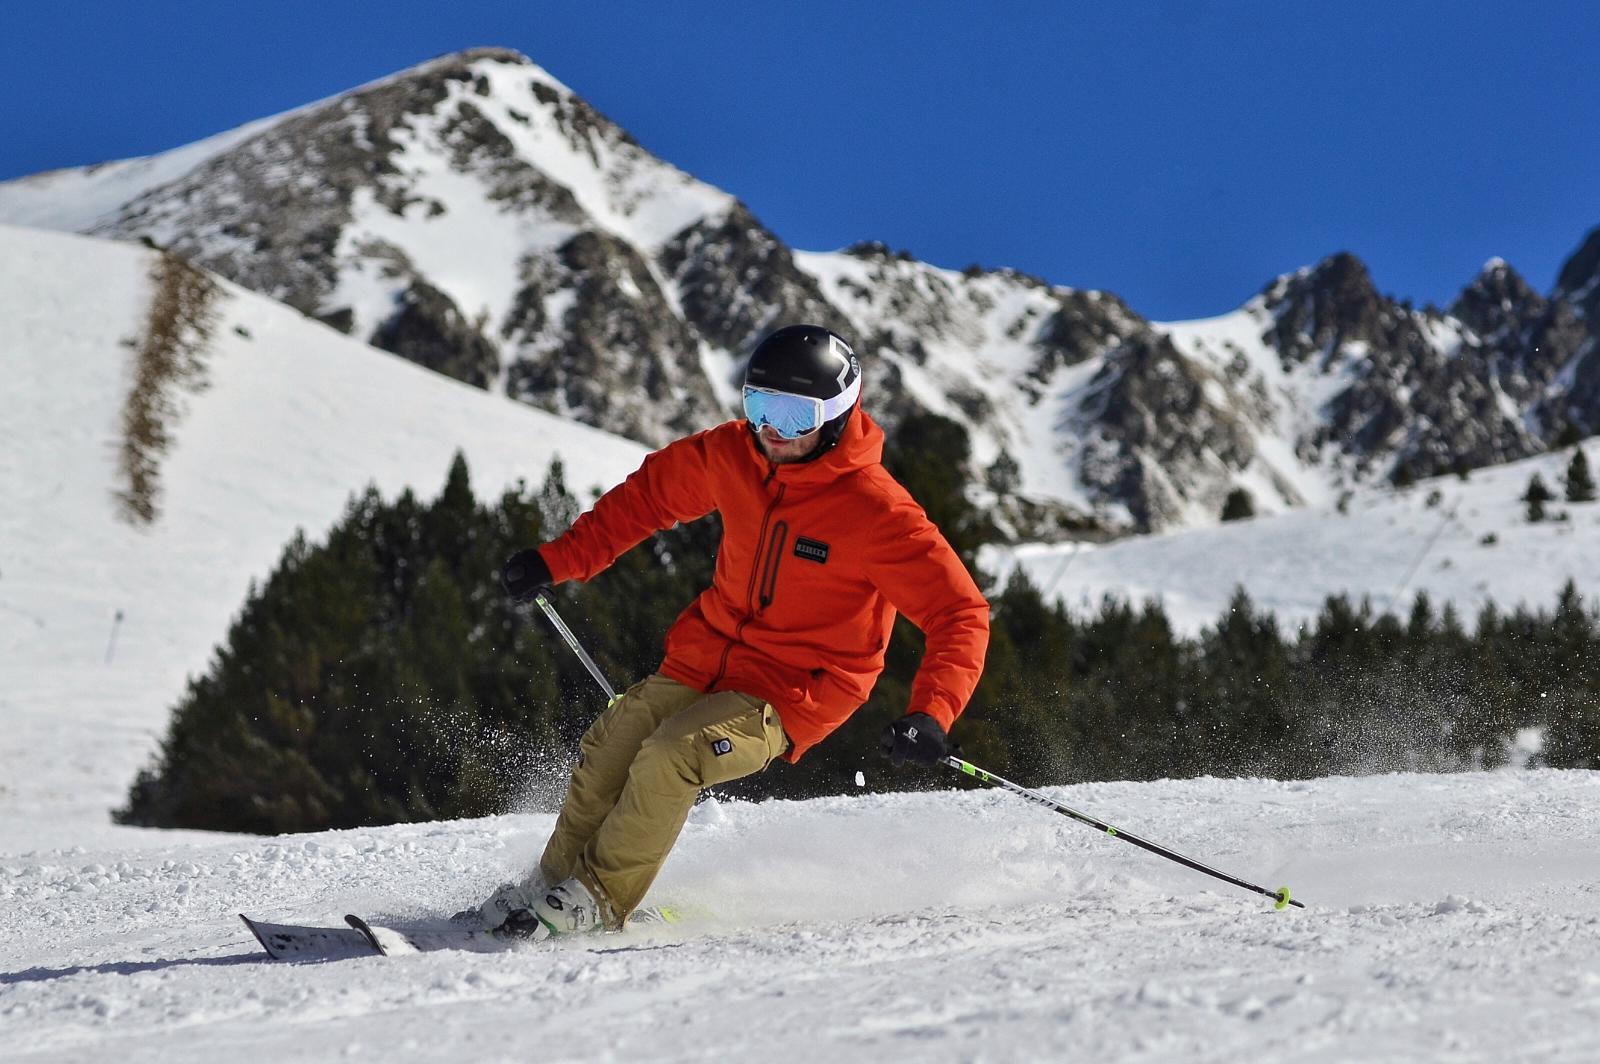 Skier en toute sécurité – pour sortir indemne de l'hiver